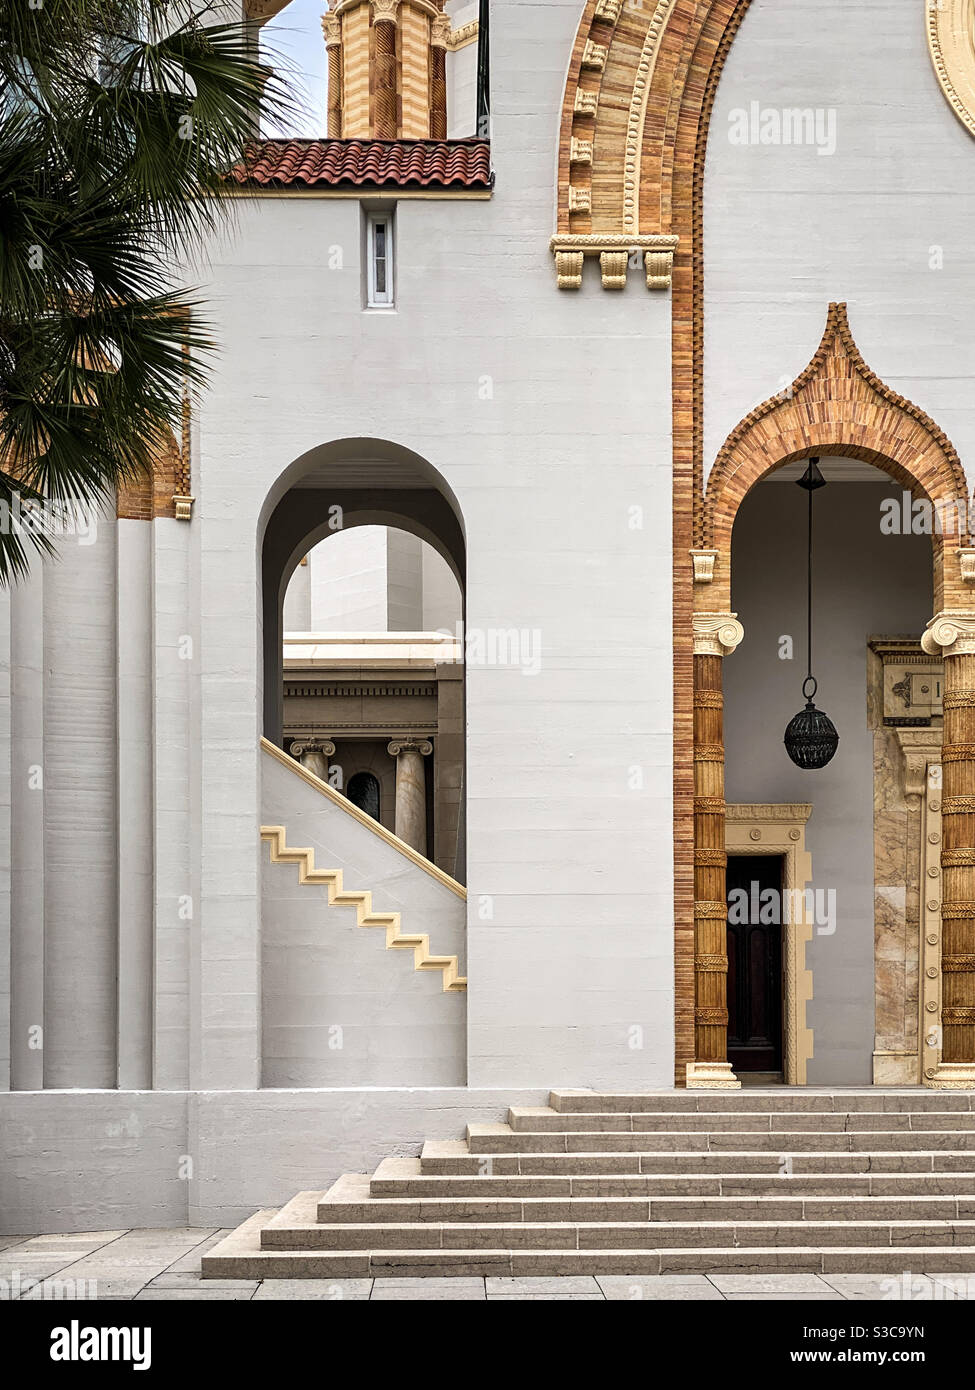 Venezianischen Renaissance-Stil Architektur Detail der Memorial Presbyterian Church in St. Augustine, Florida, USA. Diese Kirche wurde 1899 von Henry Flagler als Denkmal für seine Tochter erbaut. Stockfoto